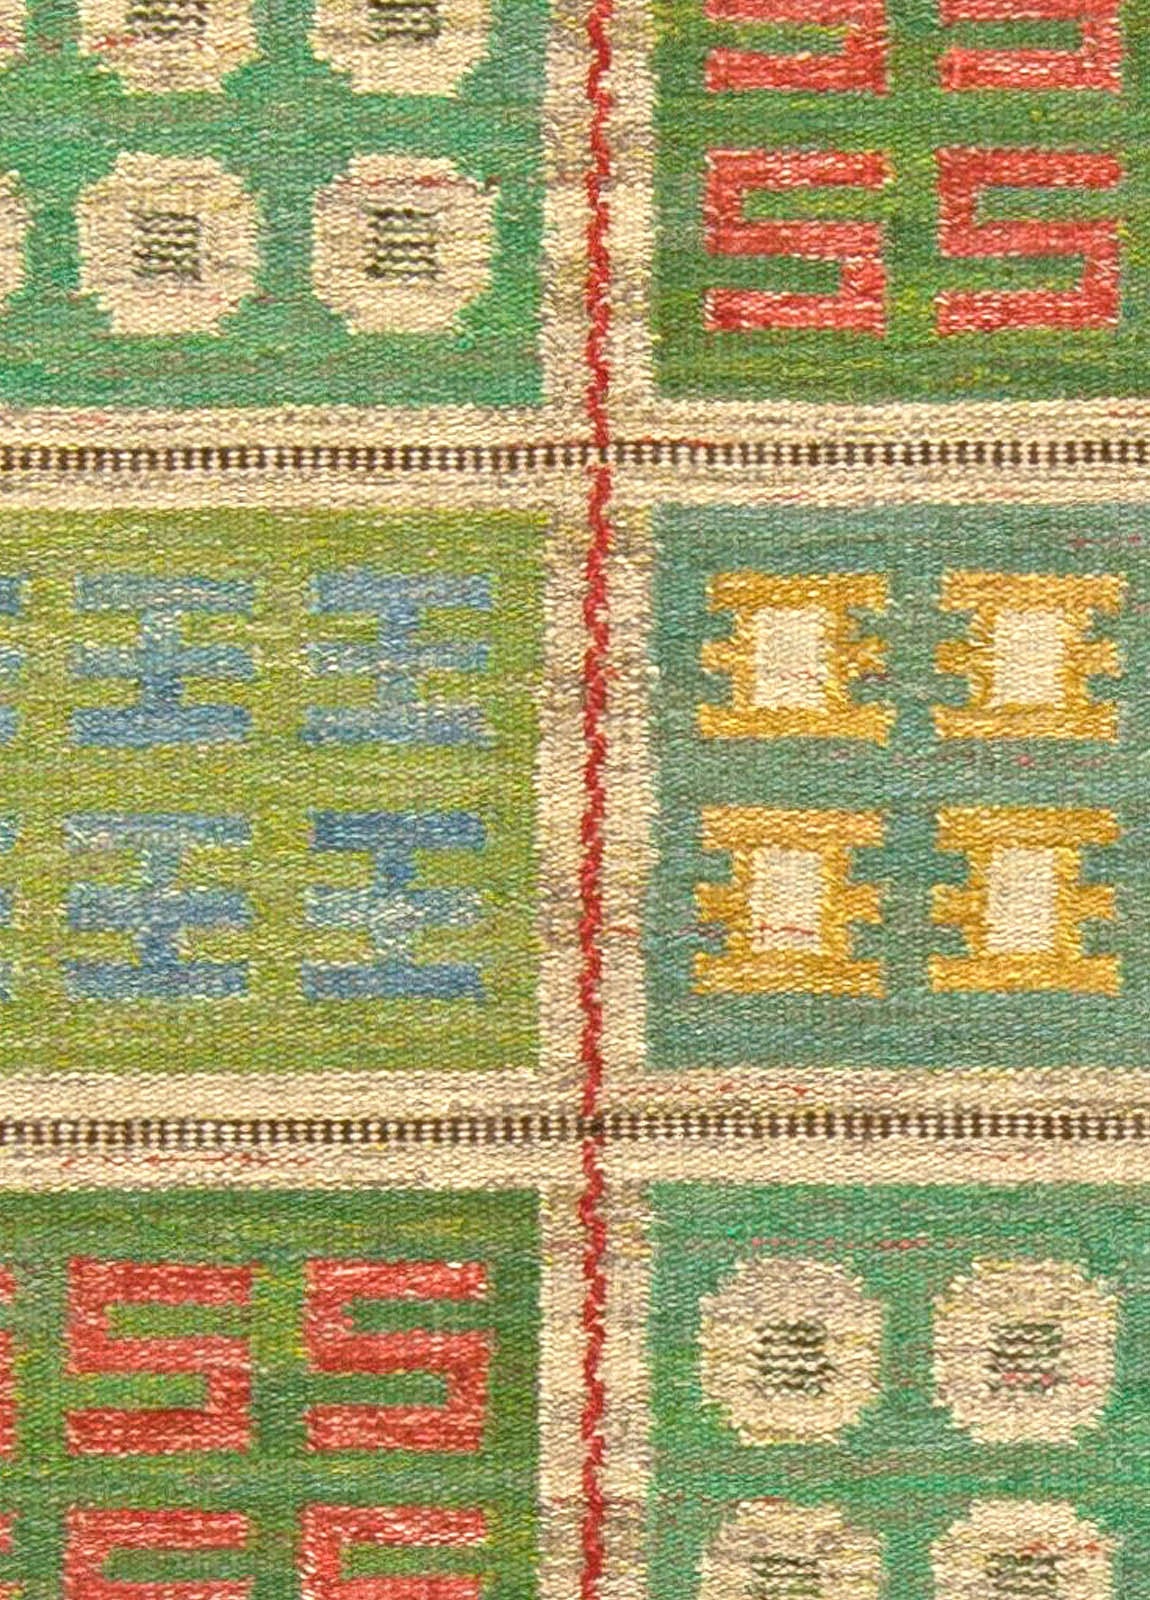 Vintage Swedish rug by Svensk Hemslöjd 'SH'.